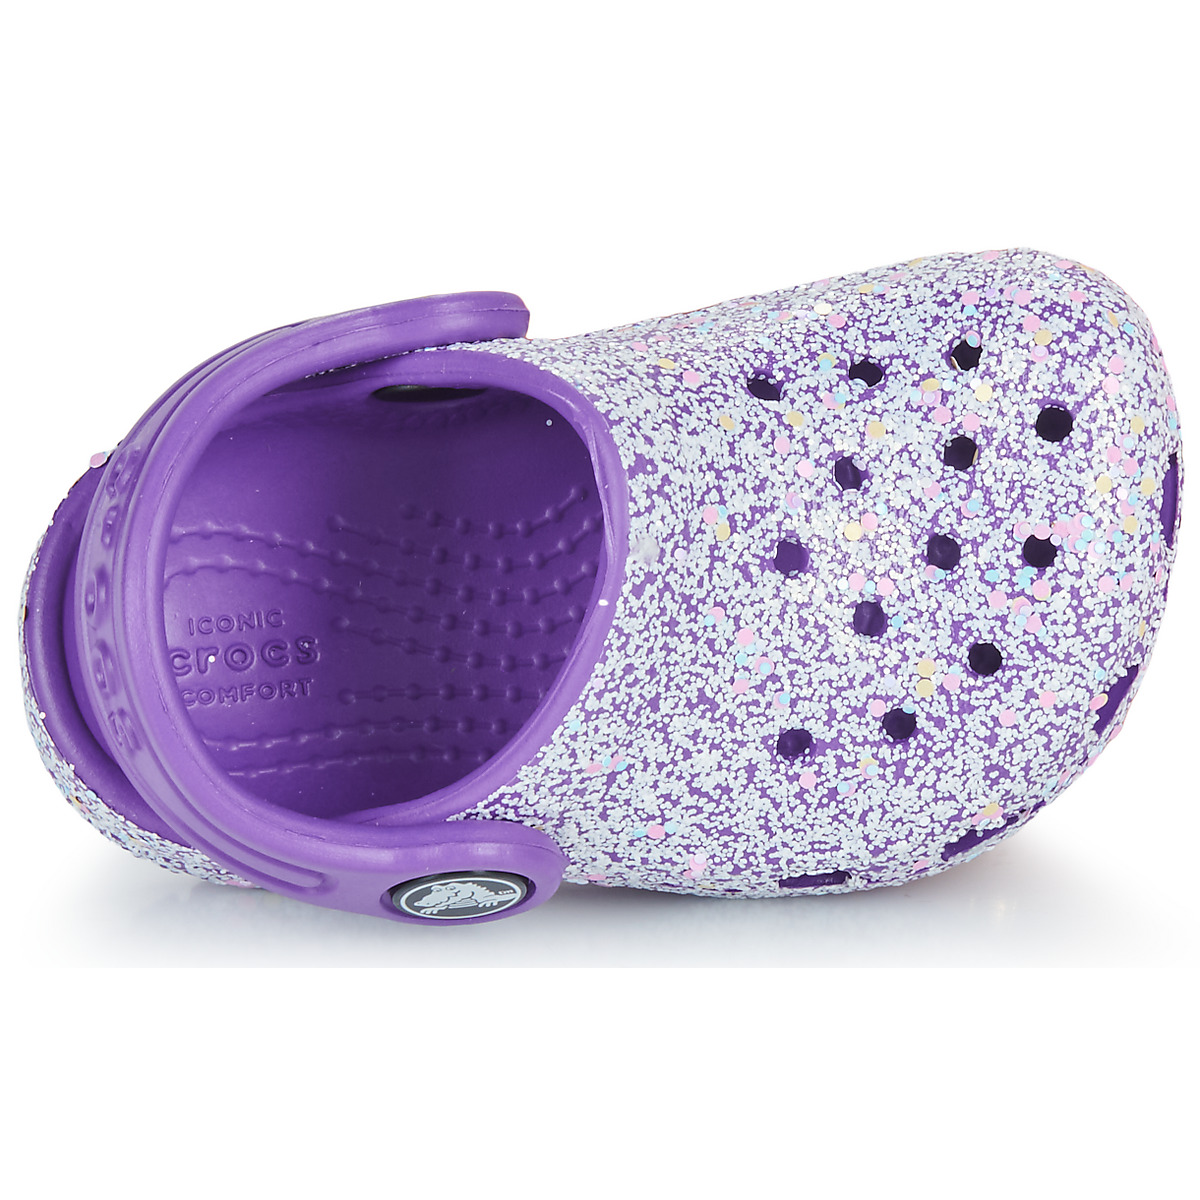 Crocs Violet Classic Glitter Clog T VCaphQSx